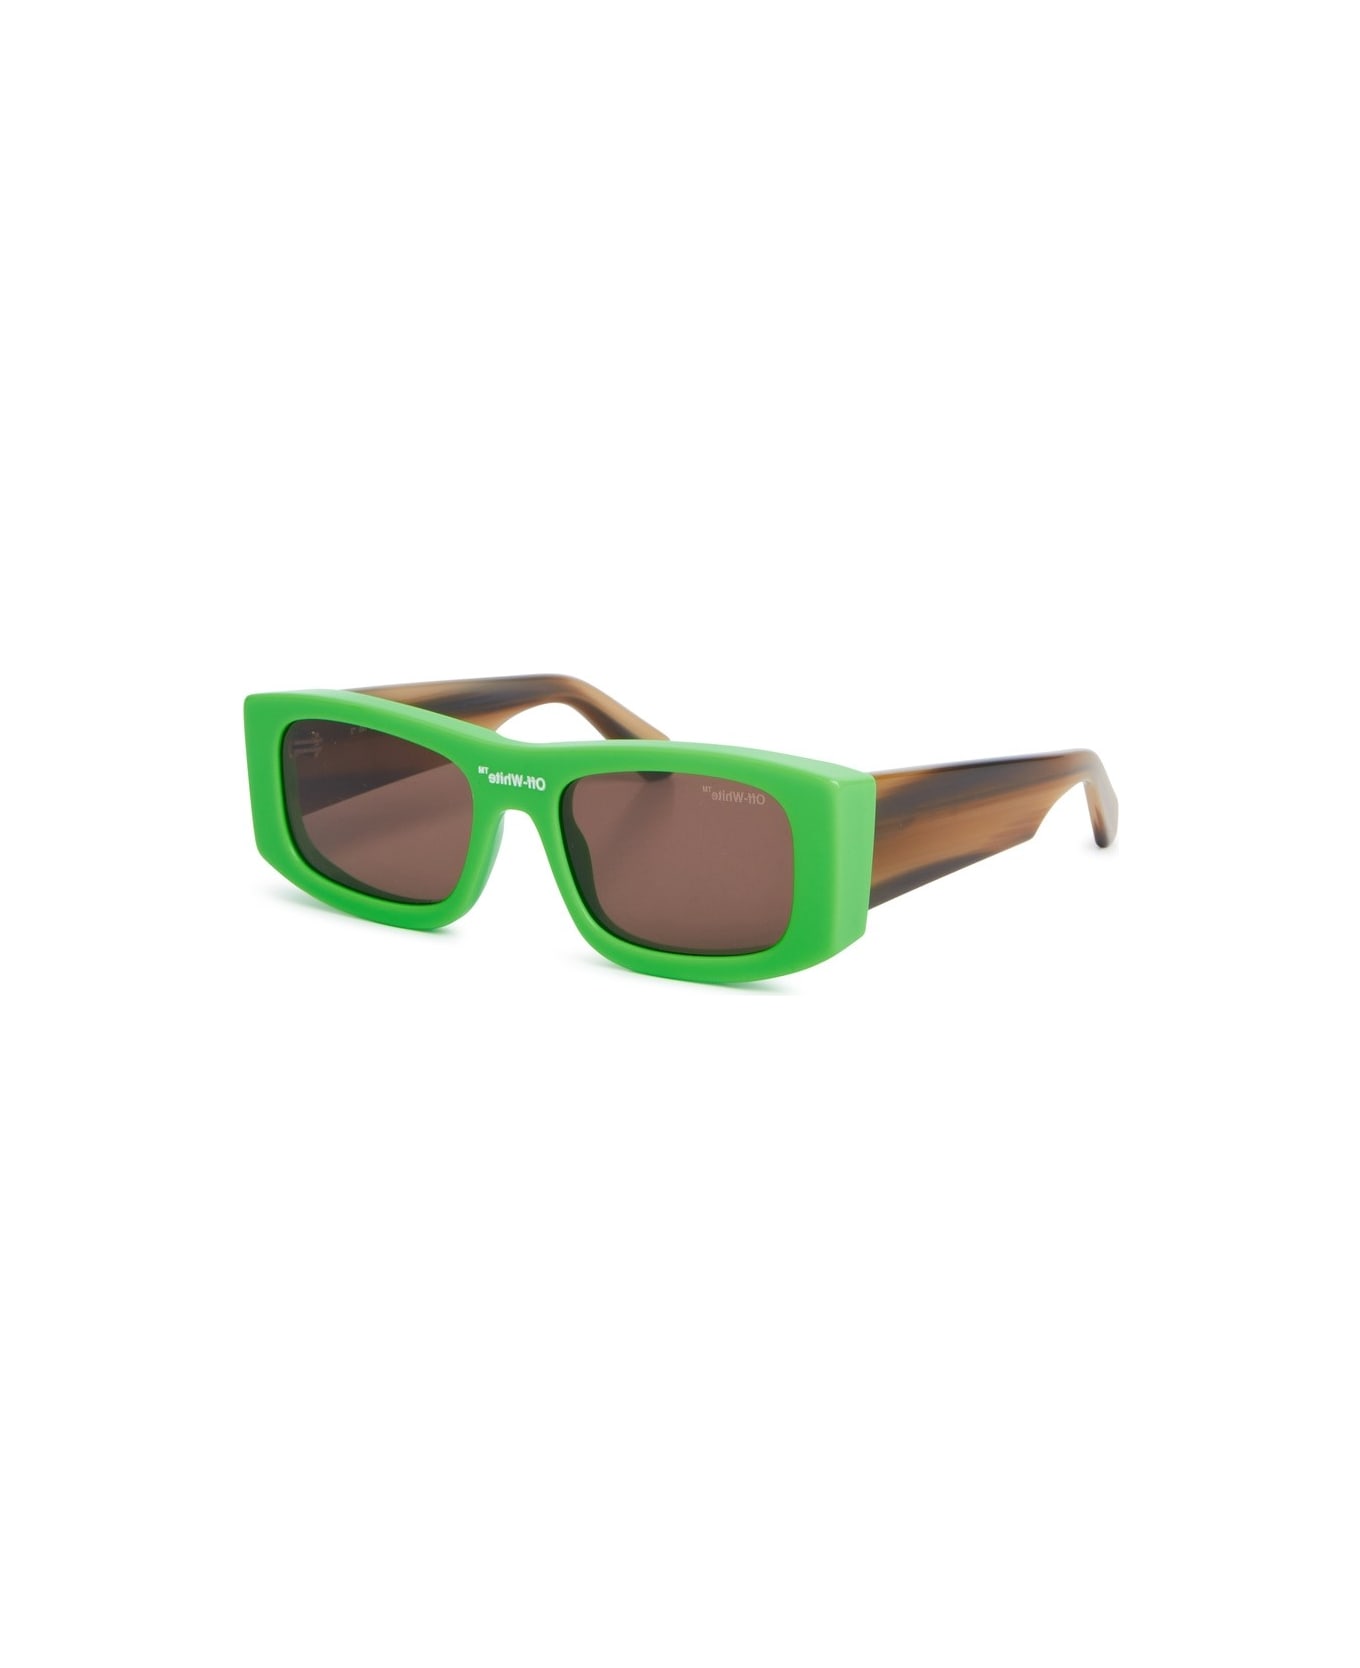 Off-White LUCIO SUNGLASSES Sunglasses - Green